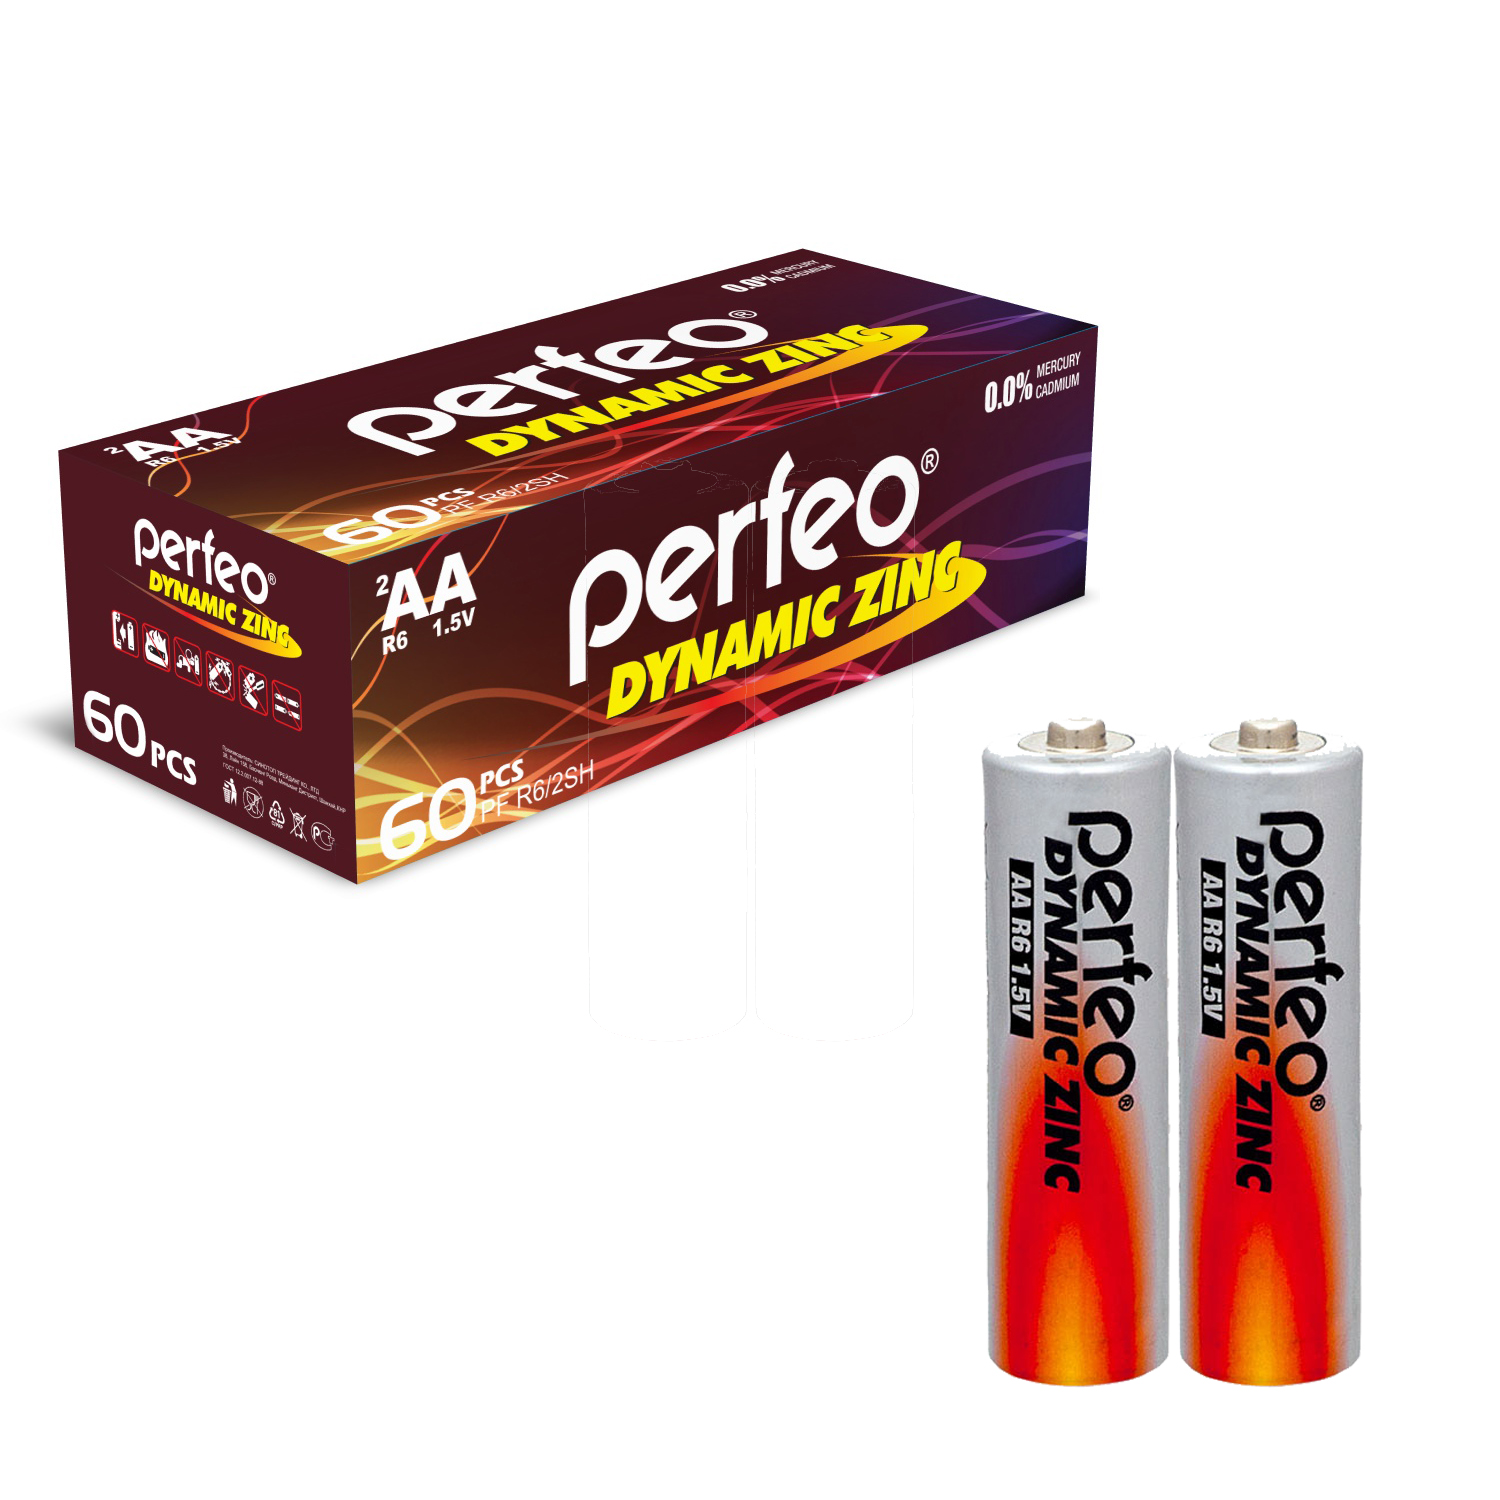 Батарейки Perfeo Dynamic Zinc AA (LR6), 60 шт, 30x2 шт литиевые батарейки perfeo